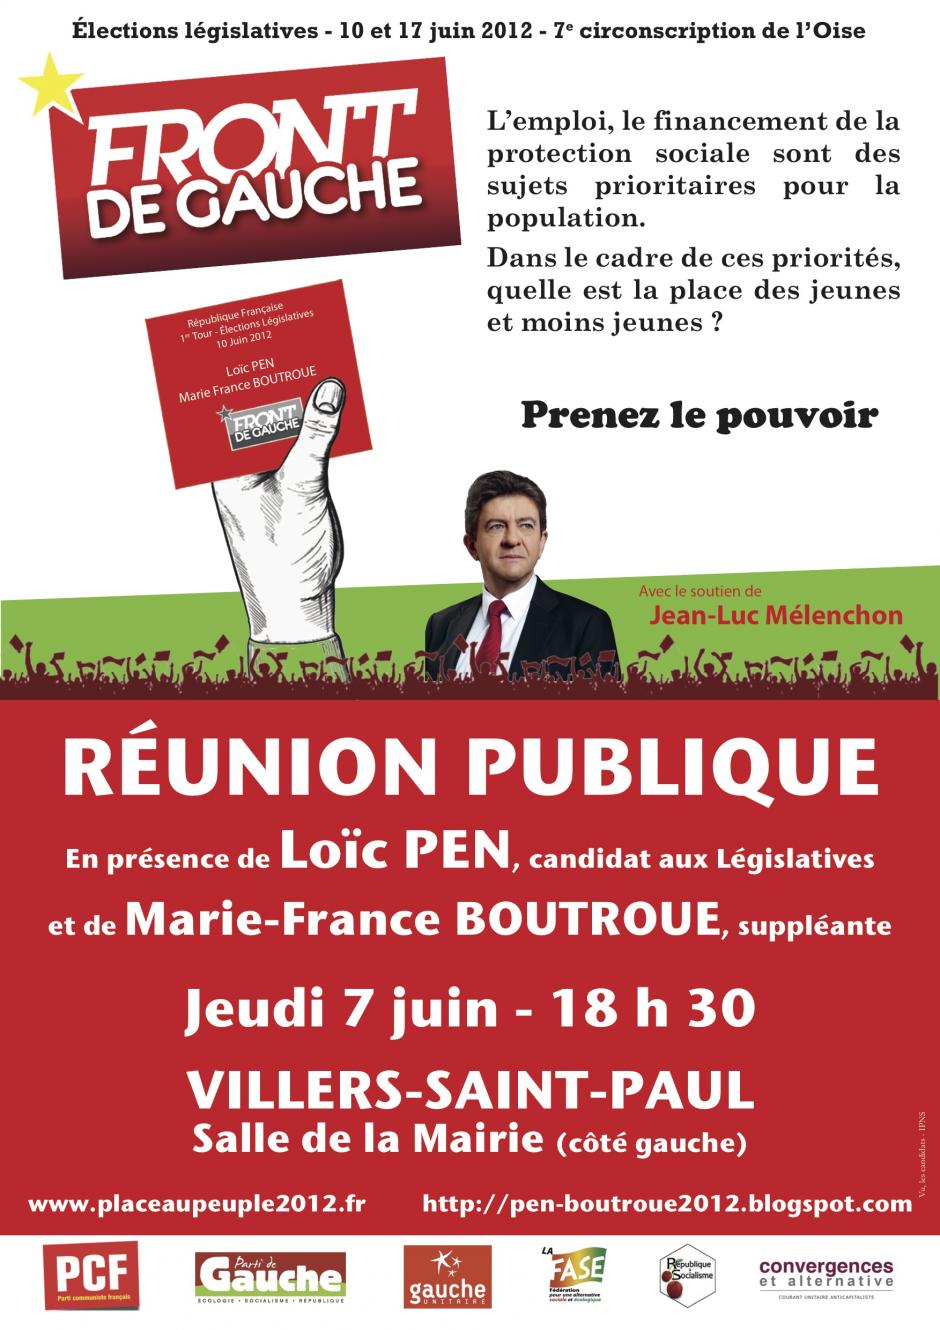 7 juin, Villers-Saint-Paul - Réunion publique du Front de gauche